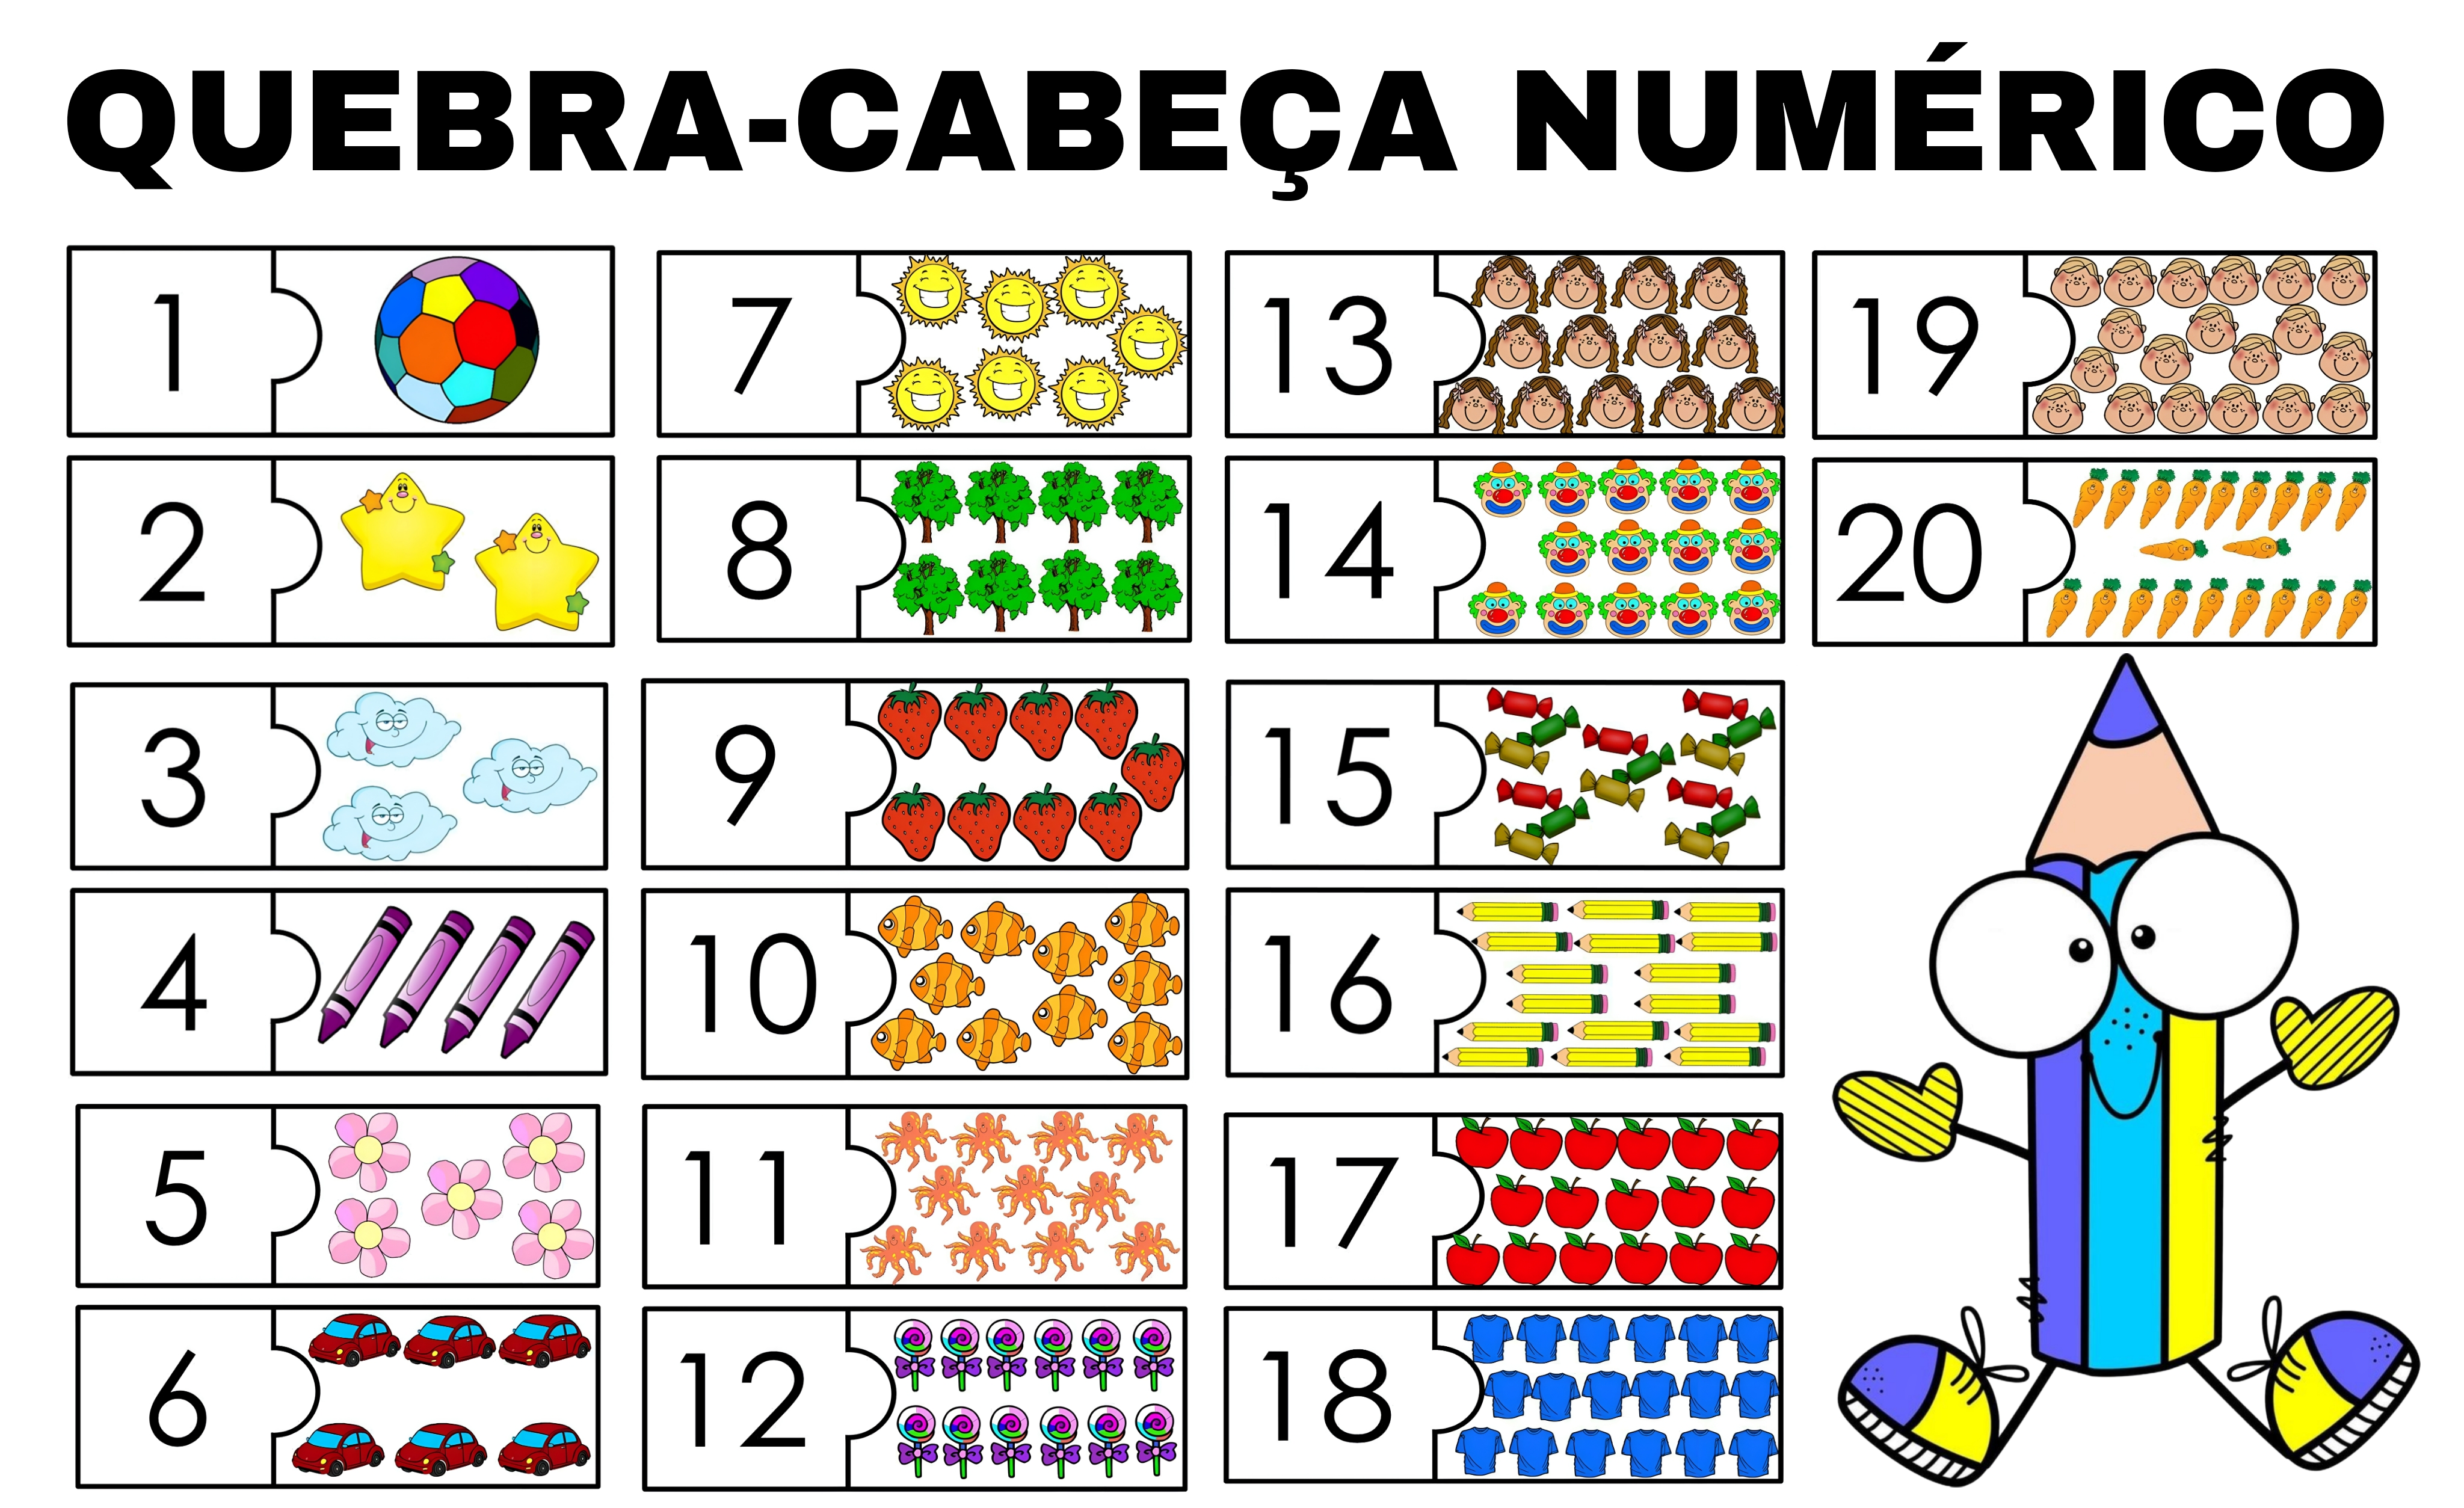 Quebra-cabeça numérico Quebra-cabeça para trabalhar número e